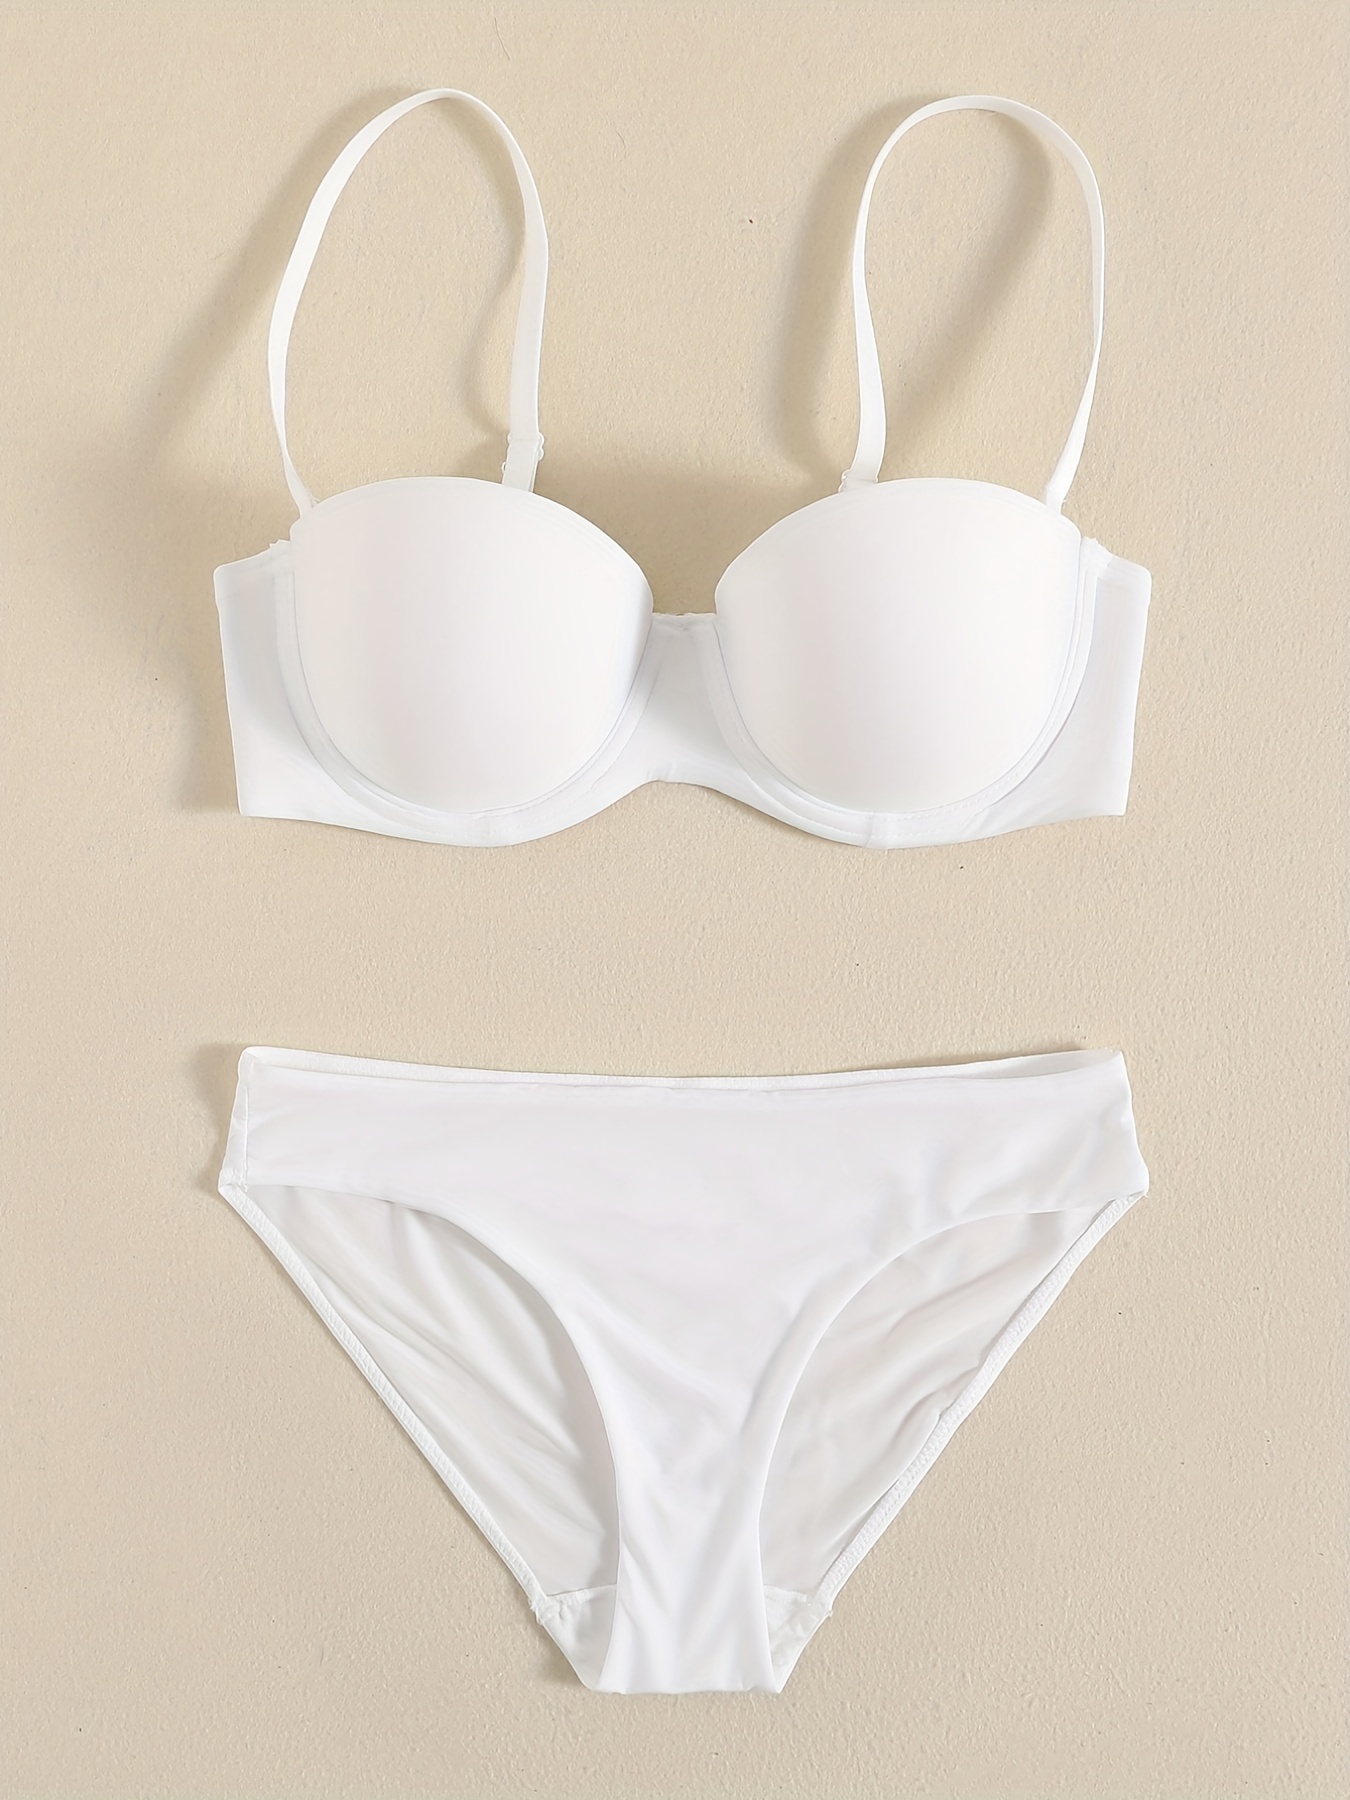 Glossy Seamless Bra & Panties, Smooth Solid Bra & Thin Bikini Panties  Lingerie Set